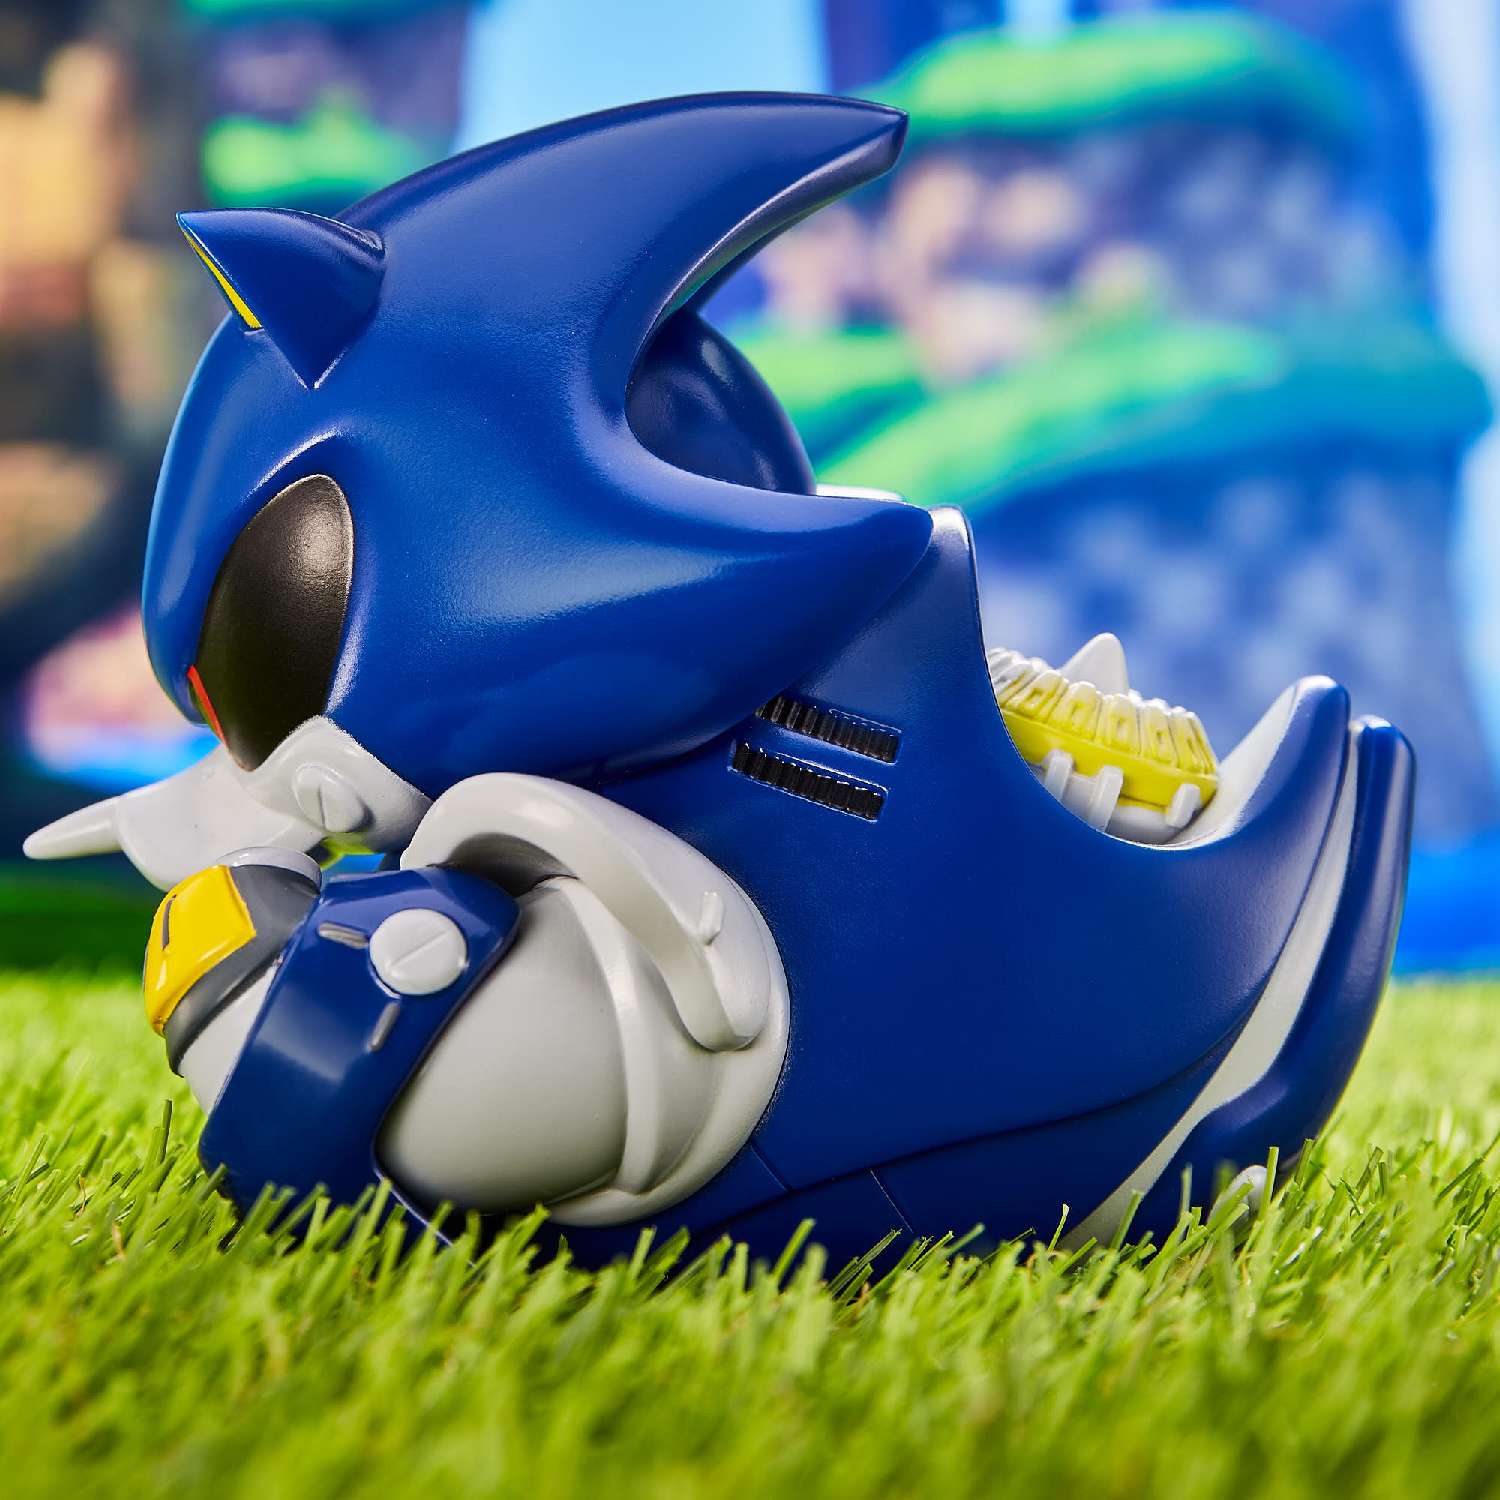 Фигурка Sonic The Hedgehog Утка Tubbz Metal Sonic - фото 13